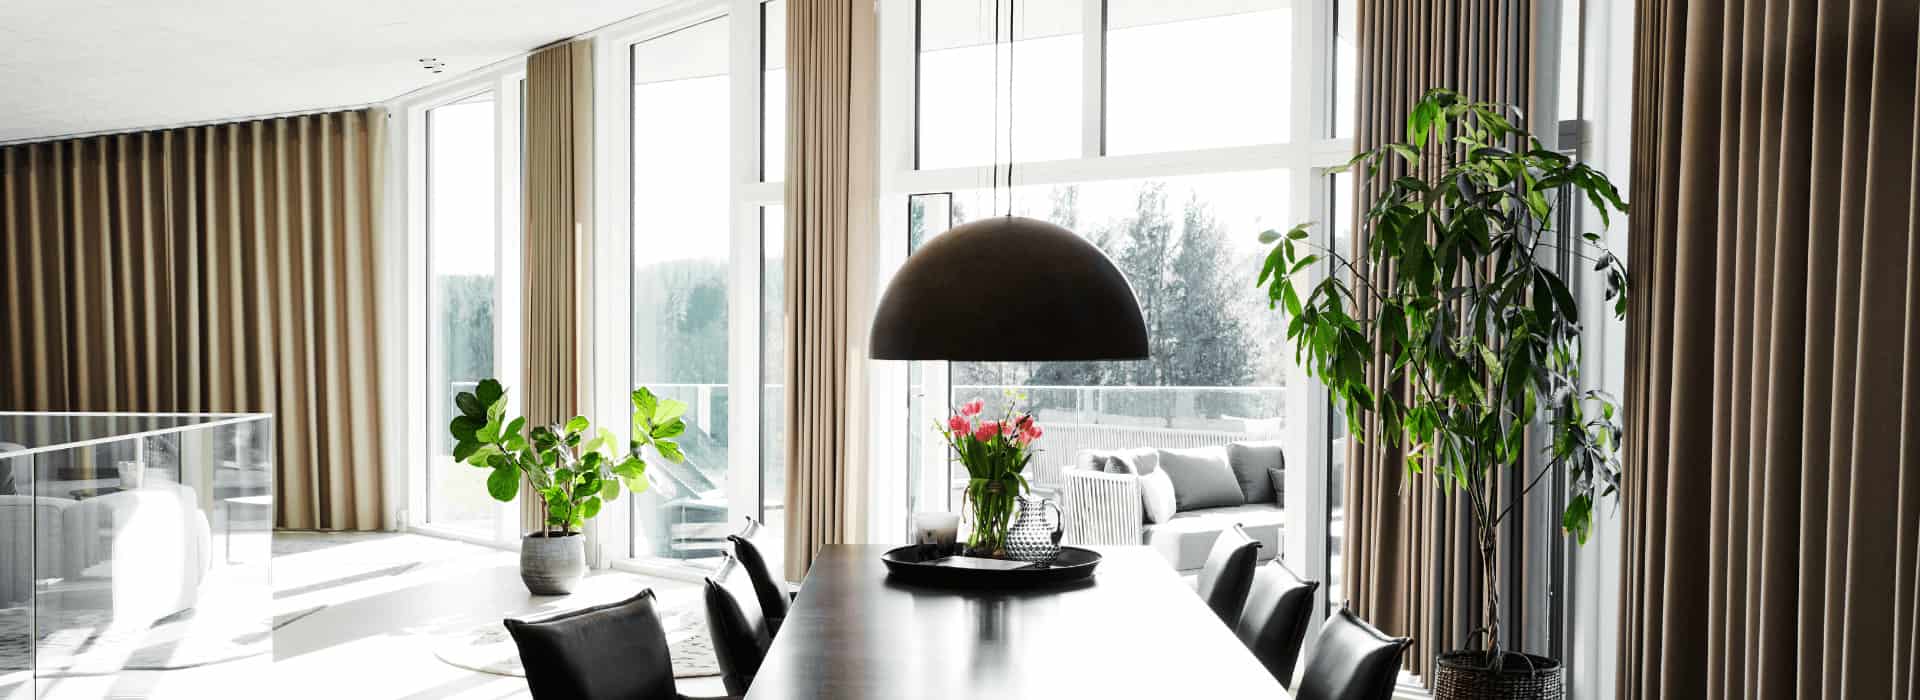 Kontrol over lysindfaldet med gardiner til store vinduer